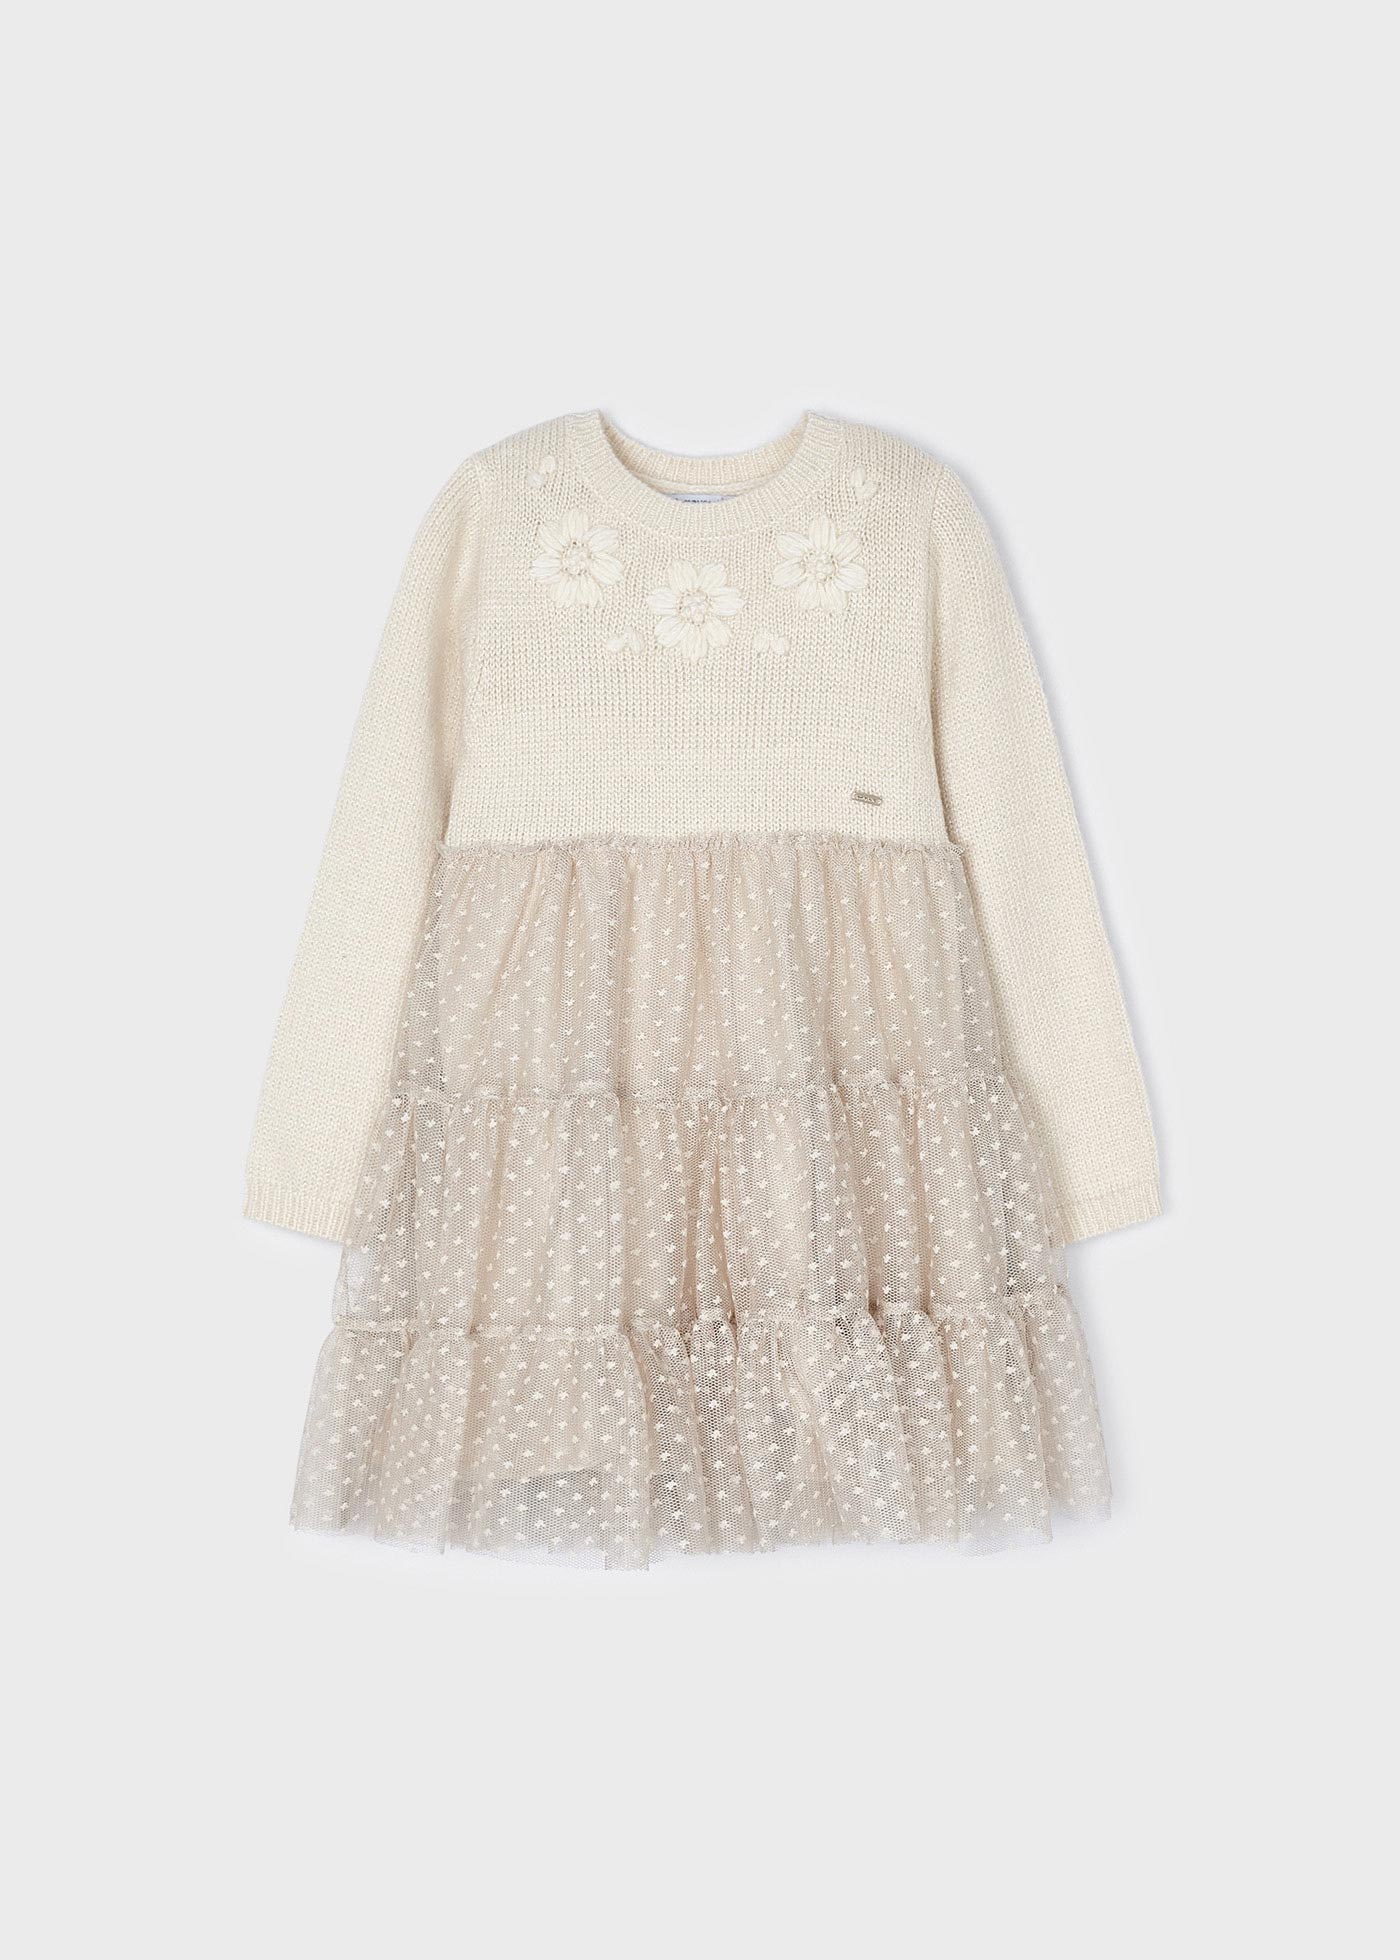 | applique Tulle ® girl dress knit floral Mayoral